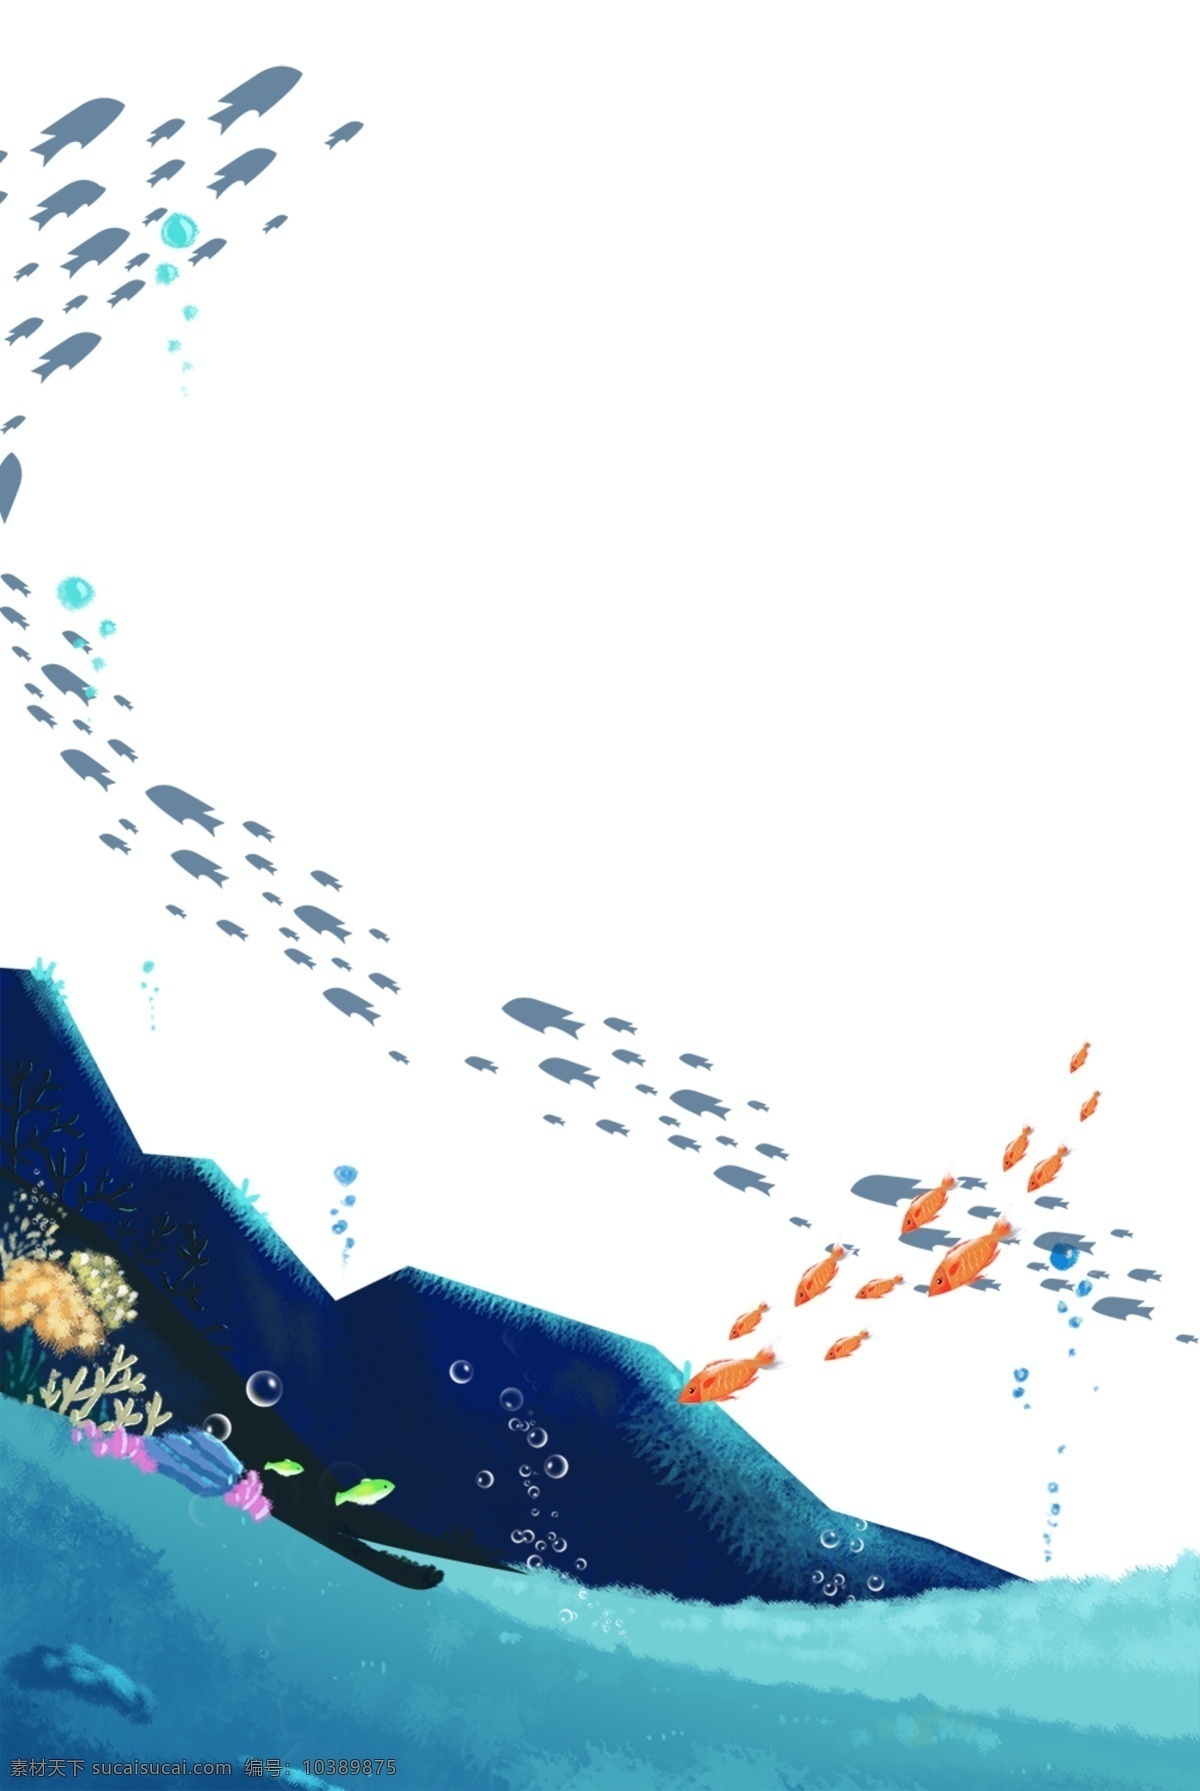 梦幻 海底 主题 边框 卡通 手绘 精美 插画 海报插画 广告插画 小清新 简约风 装饰图案